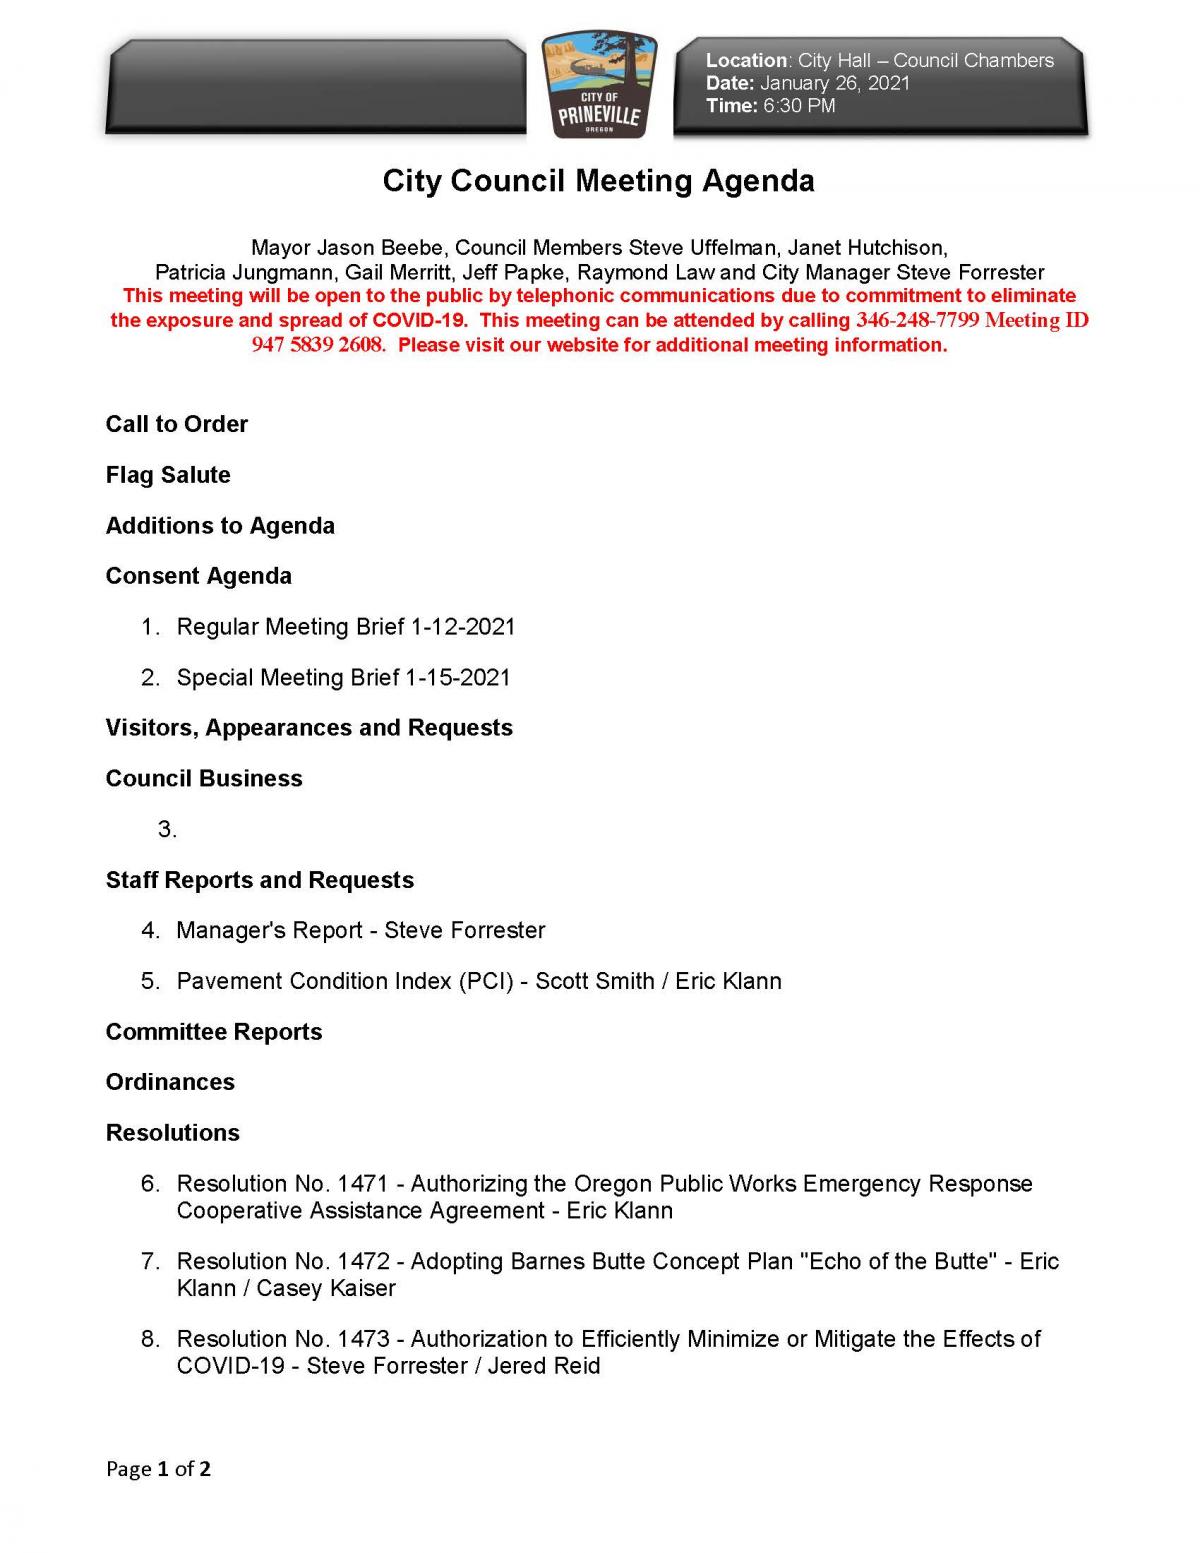 Council Agenda 1-26-2021 pg 1